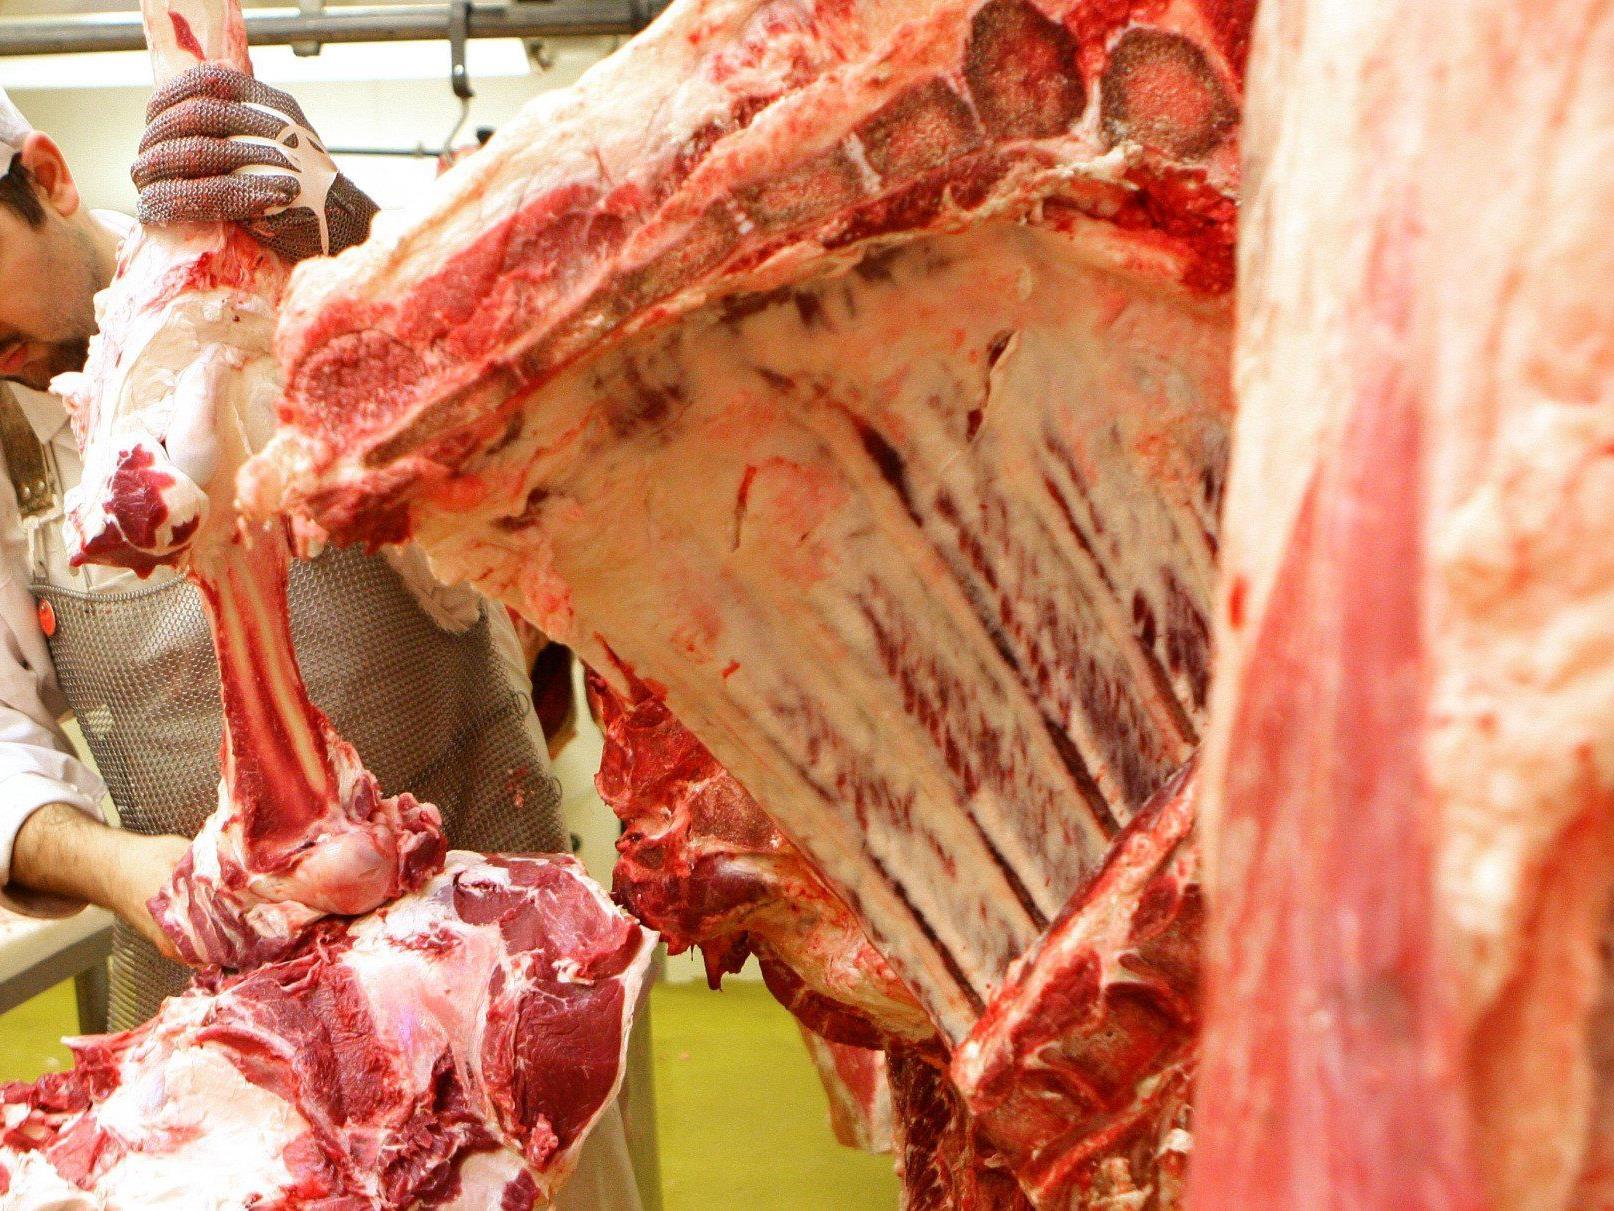 "Mogelpackungen": Skandal rund um verfälschtes Rindfleisch greift weiter um sich.